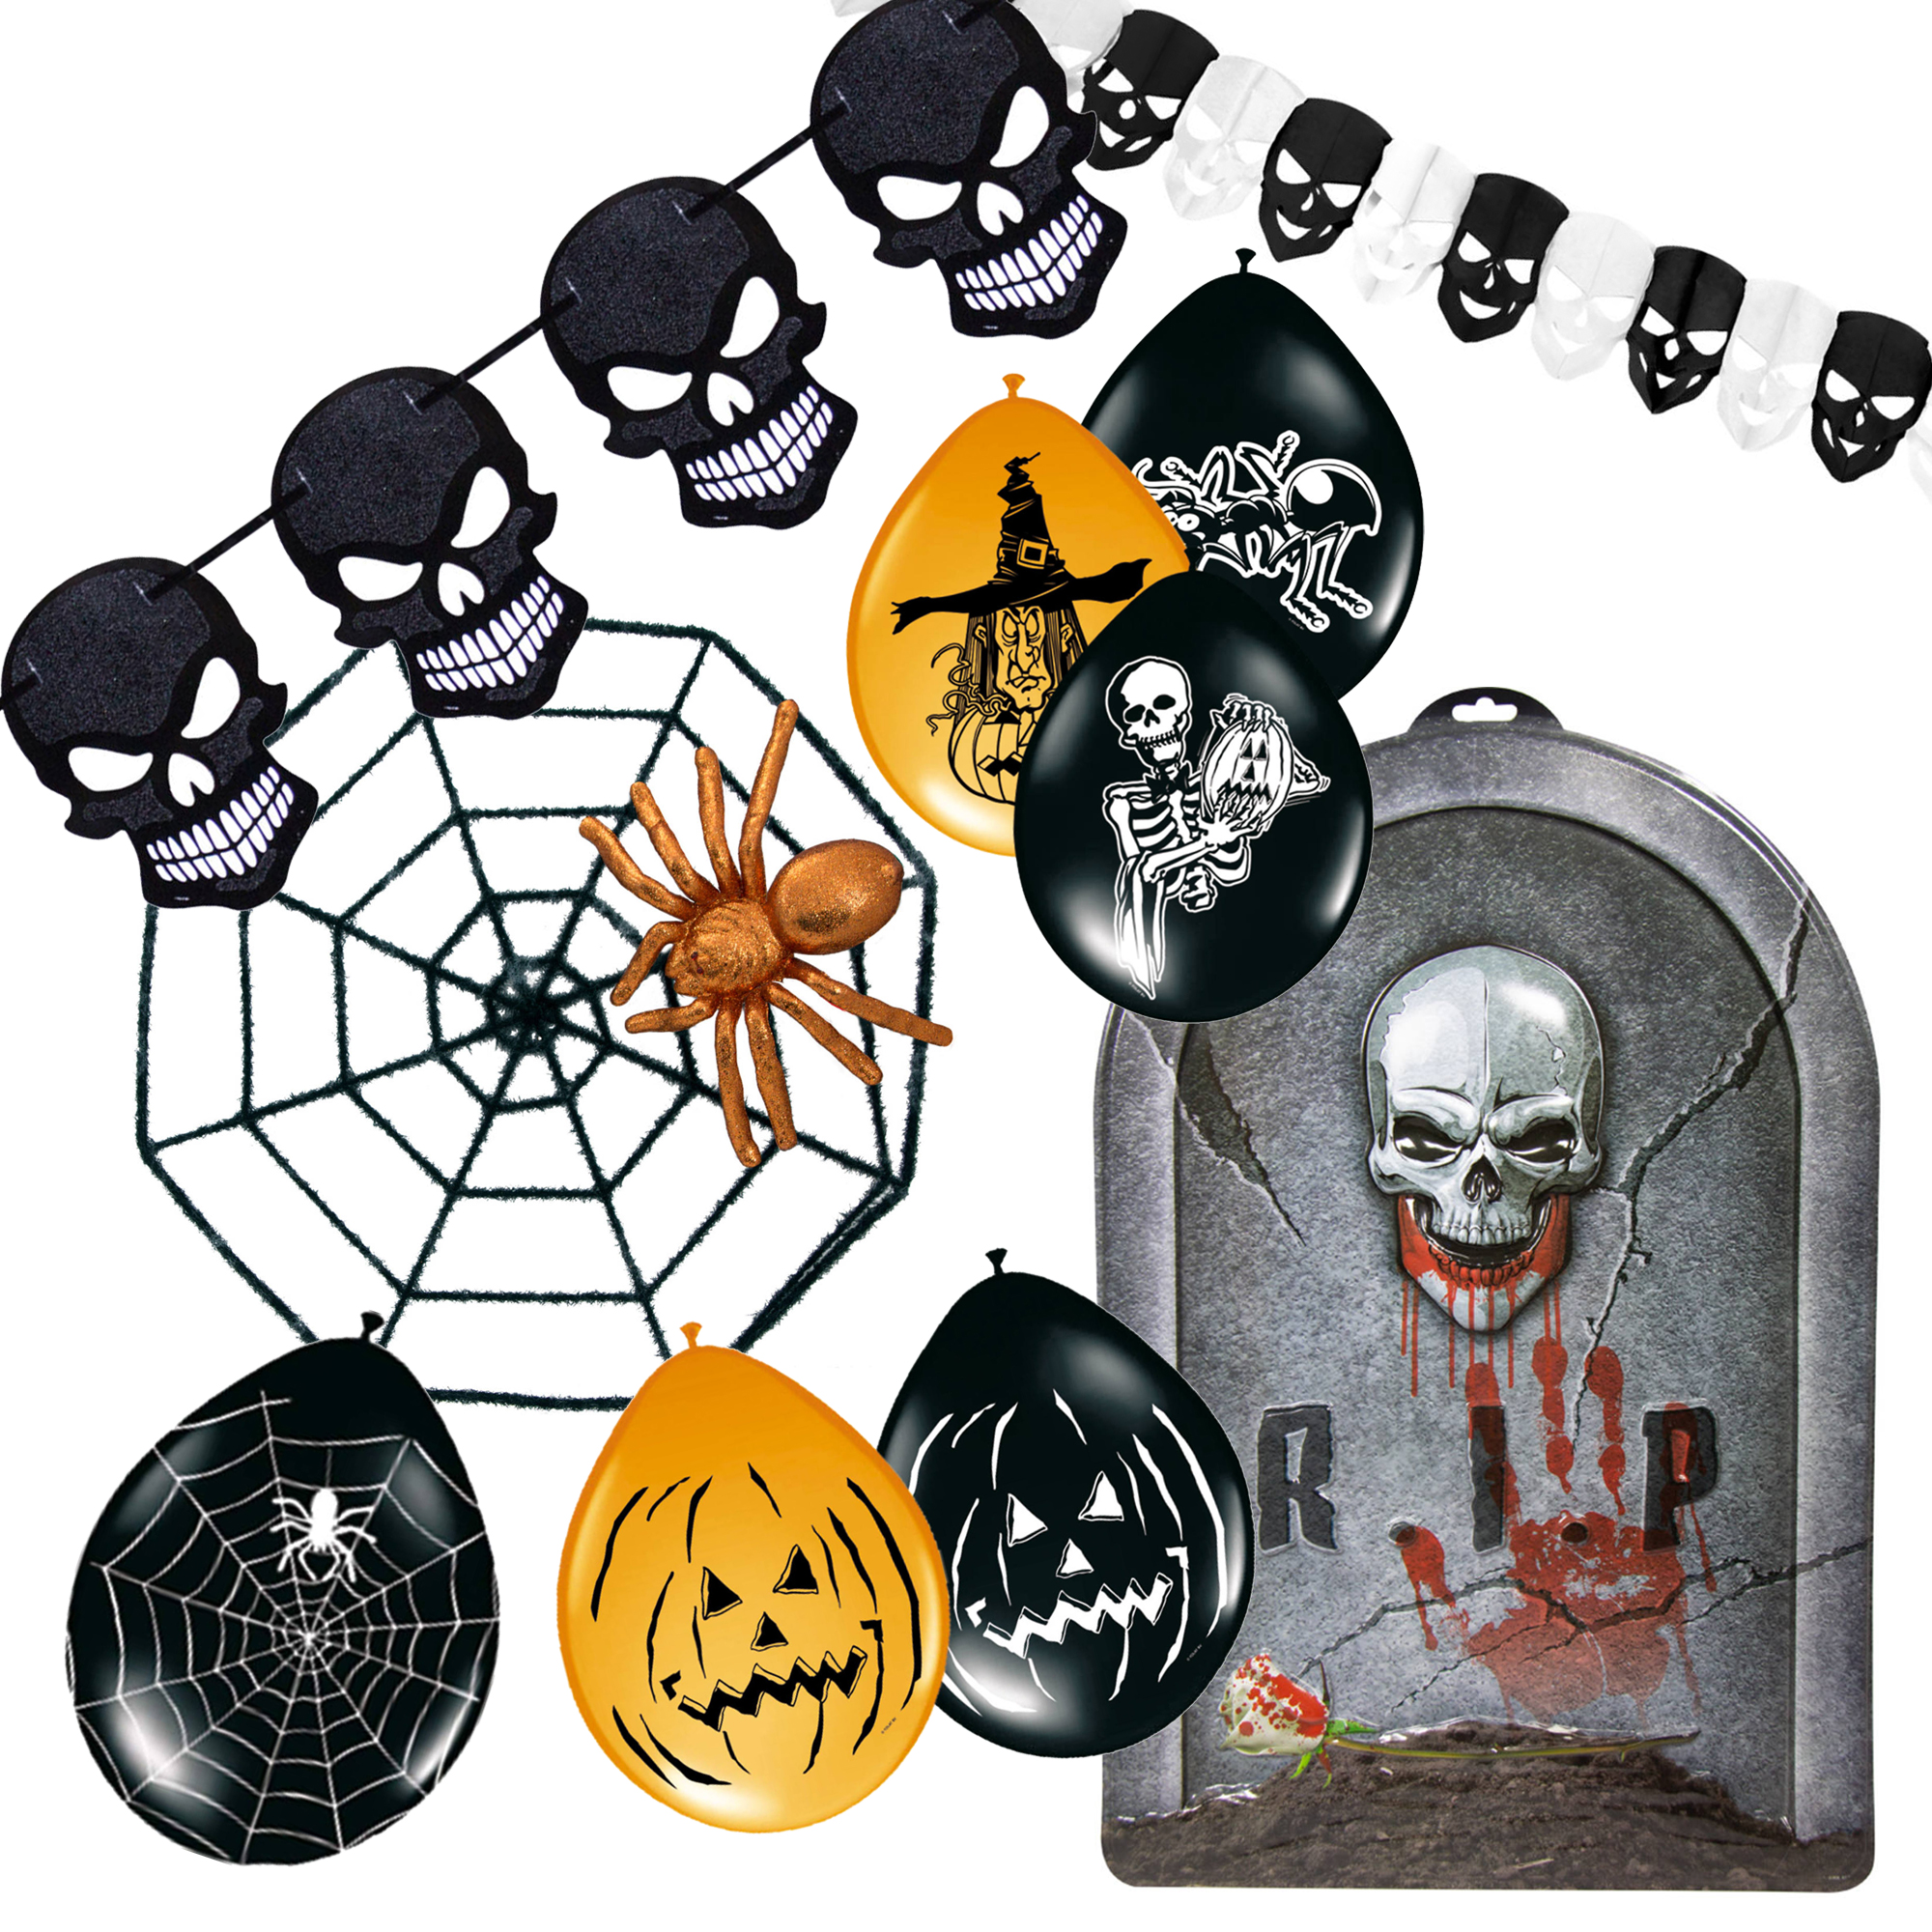 28-teiliges Halloween Dekoration Set inkl. Totenkopf-Girlanden